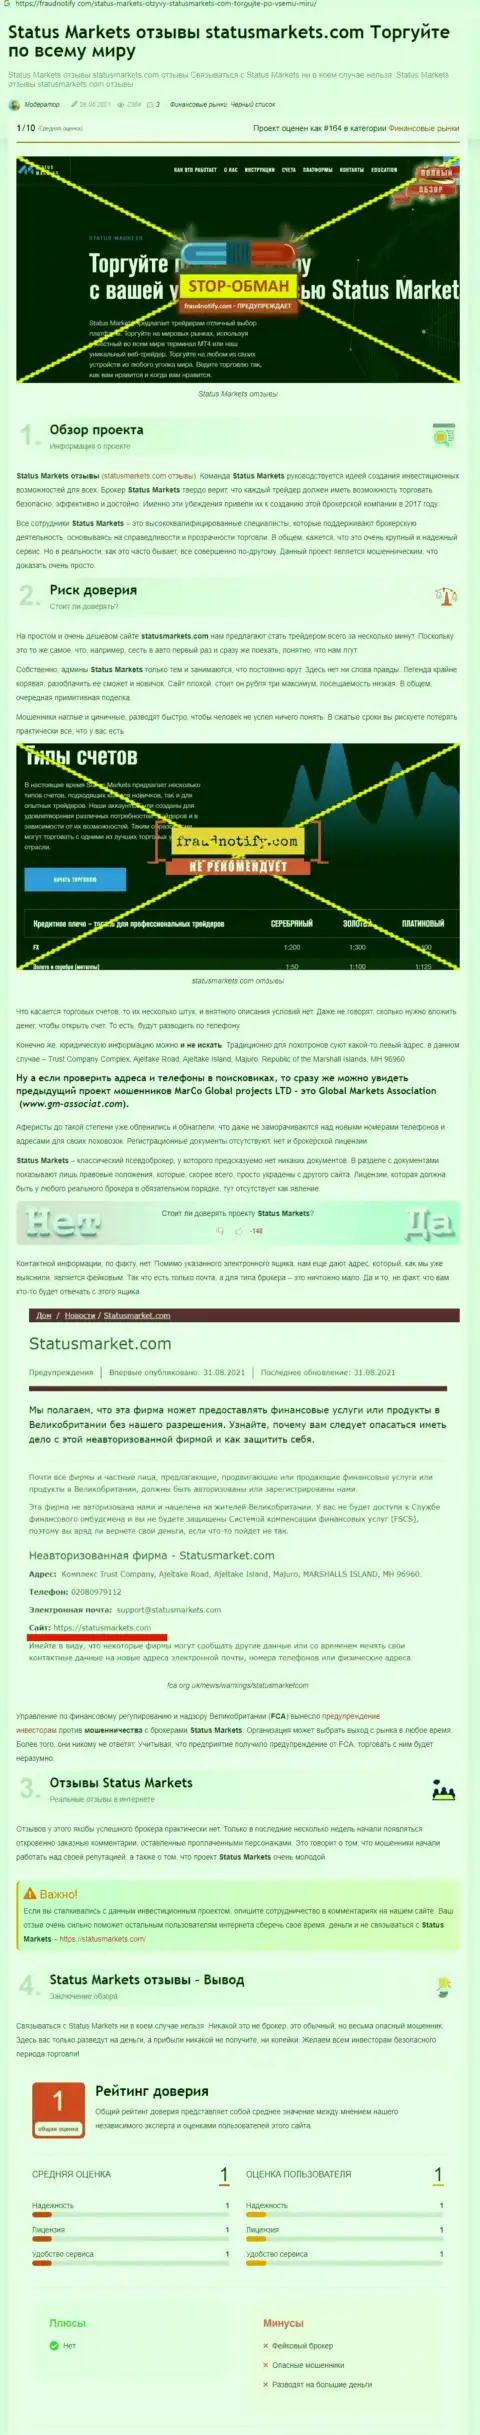 В конторе StatusMarkets лохотронят - свидетельства противозаконных манипуляций (обзор афер компании)